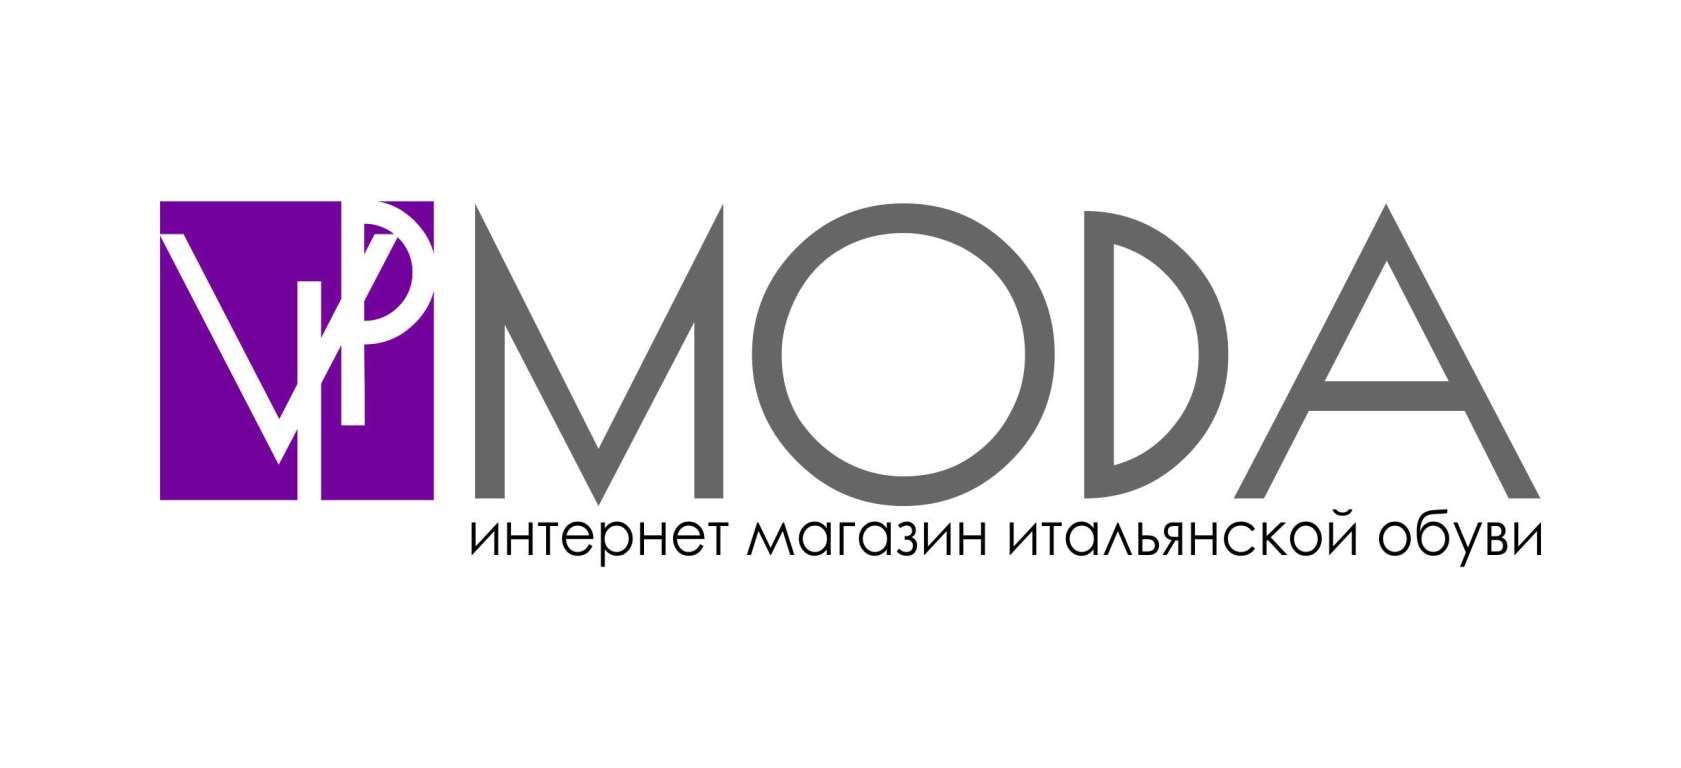 Лого и фирменный стиль компании ВИПМОДА  - дизайнер leka23